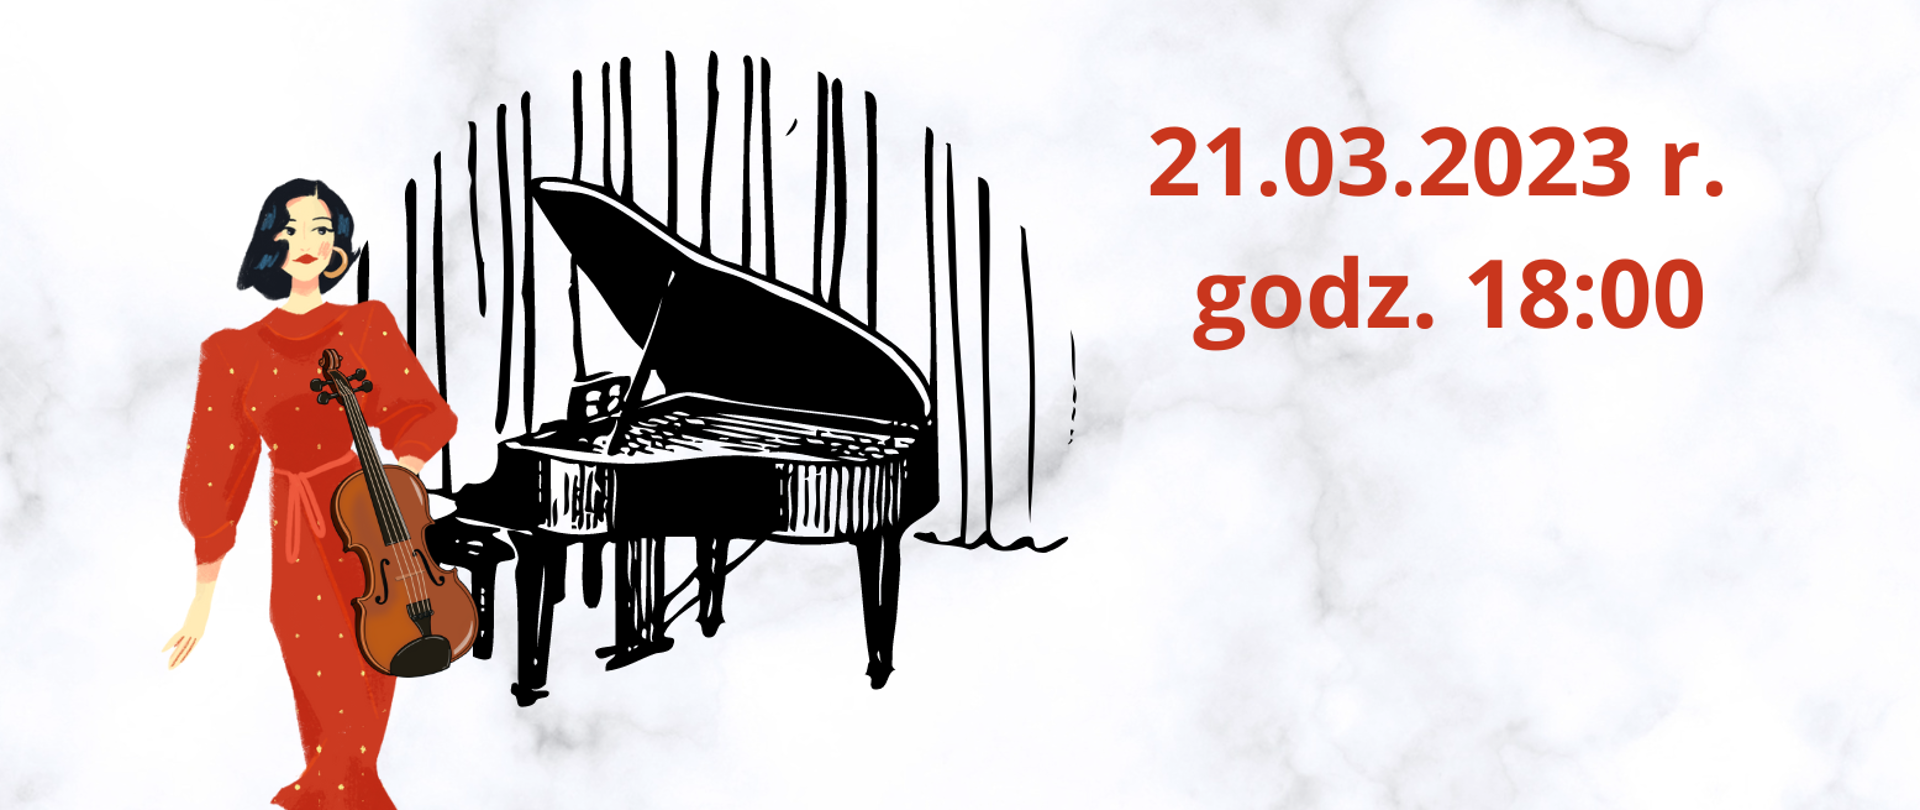 plakat na jasnym tle z terminem koncertu 21.03.2023 r. godz. 18:00 wystąpią: Karolina Podorska i Mateusz Słowikowski w lewym górnym rogu grafika kobiety w czerwonej sukience ze skrzypcami oraz grafika fortepianu